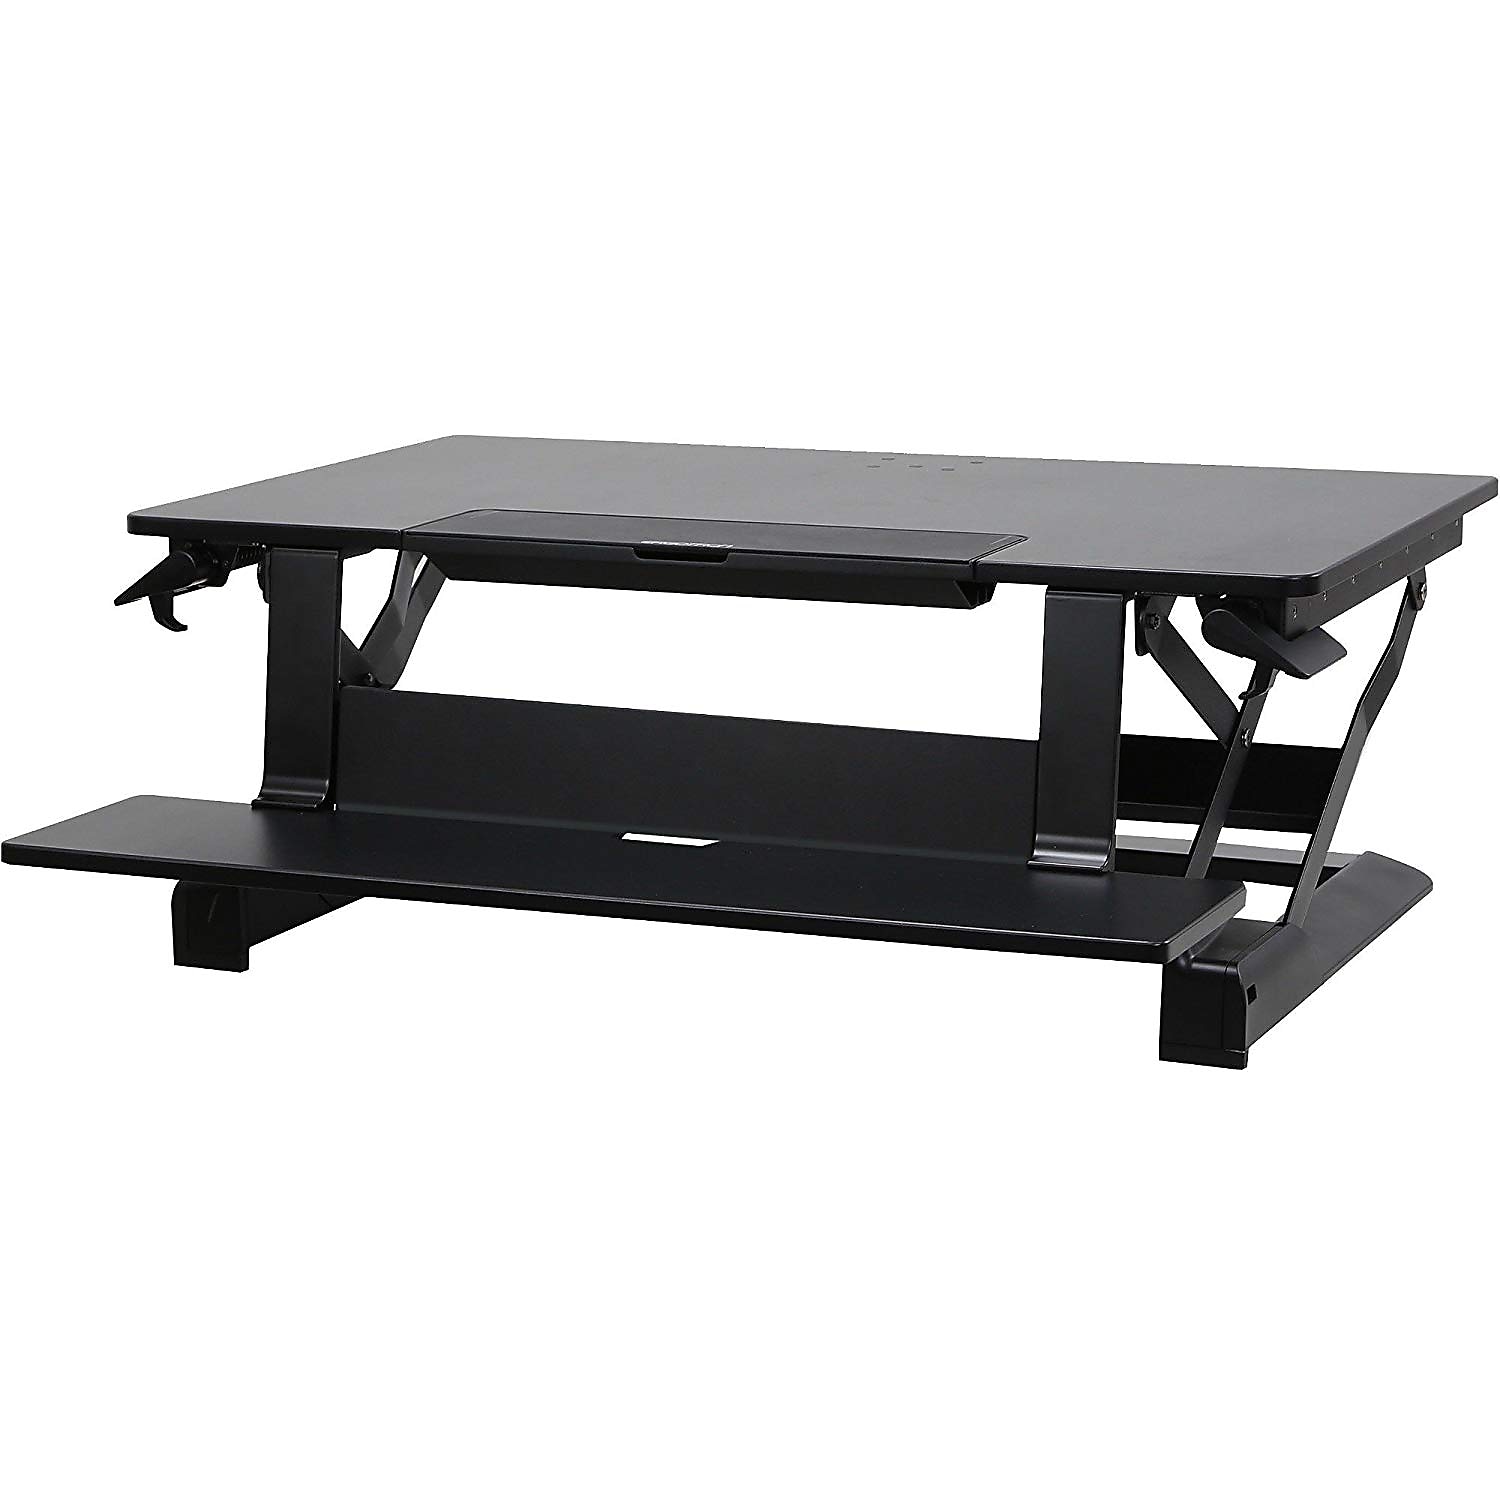 Ergotron WorkFit-TLE Adjustable Riser Desk (33-444-921) - image 2 of 2